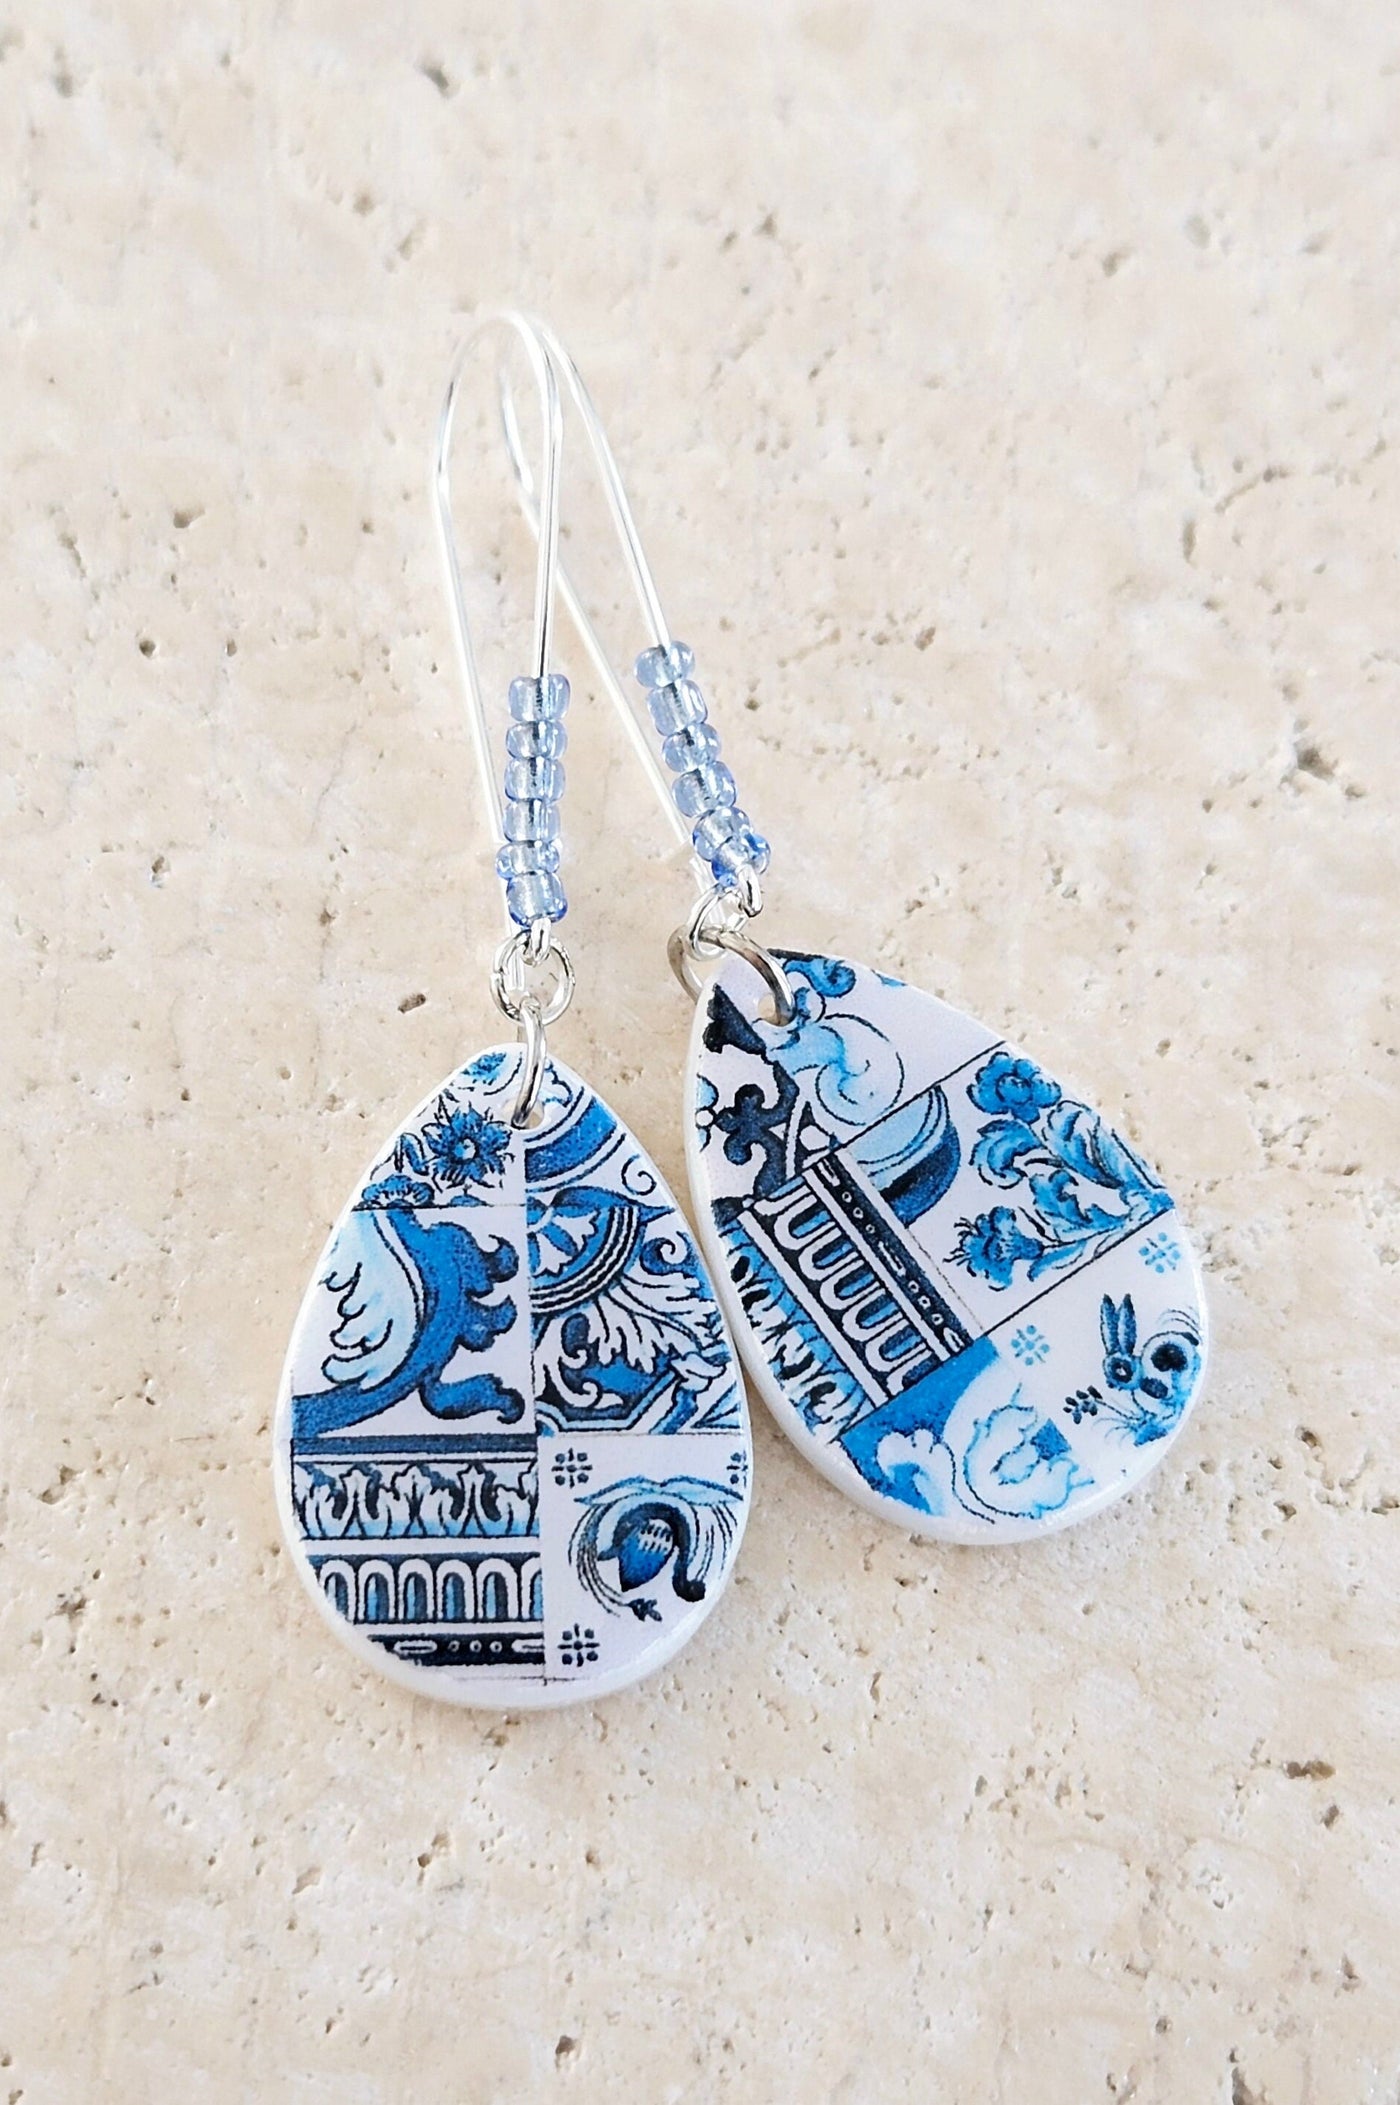 Portugal Teardrop Tile Earring Portuguese Jewelry Azulejo Earring Tile Teardrop Travel Gift Souvenir Mother Pearl Blue Mixed Tile Earring